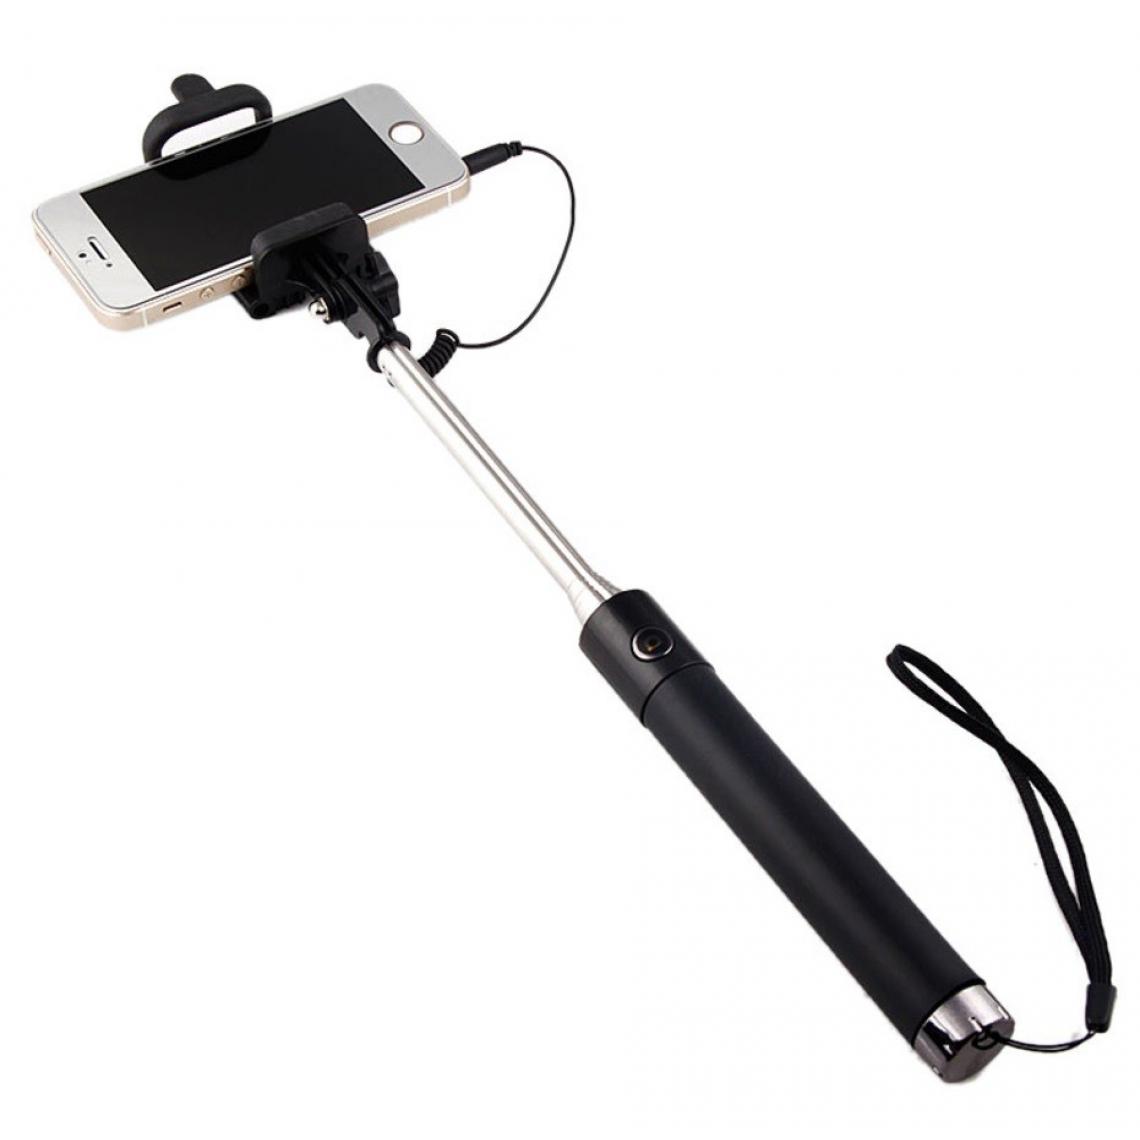 Shot - Perche Selfie Metal pour "SAMSUNG Galaxy A30" Smartphone avec Cable Jack Selfie Stick Android IOS Reglable Bouton Photo (NOIR) - Autres accessoires smartphone